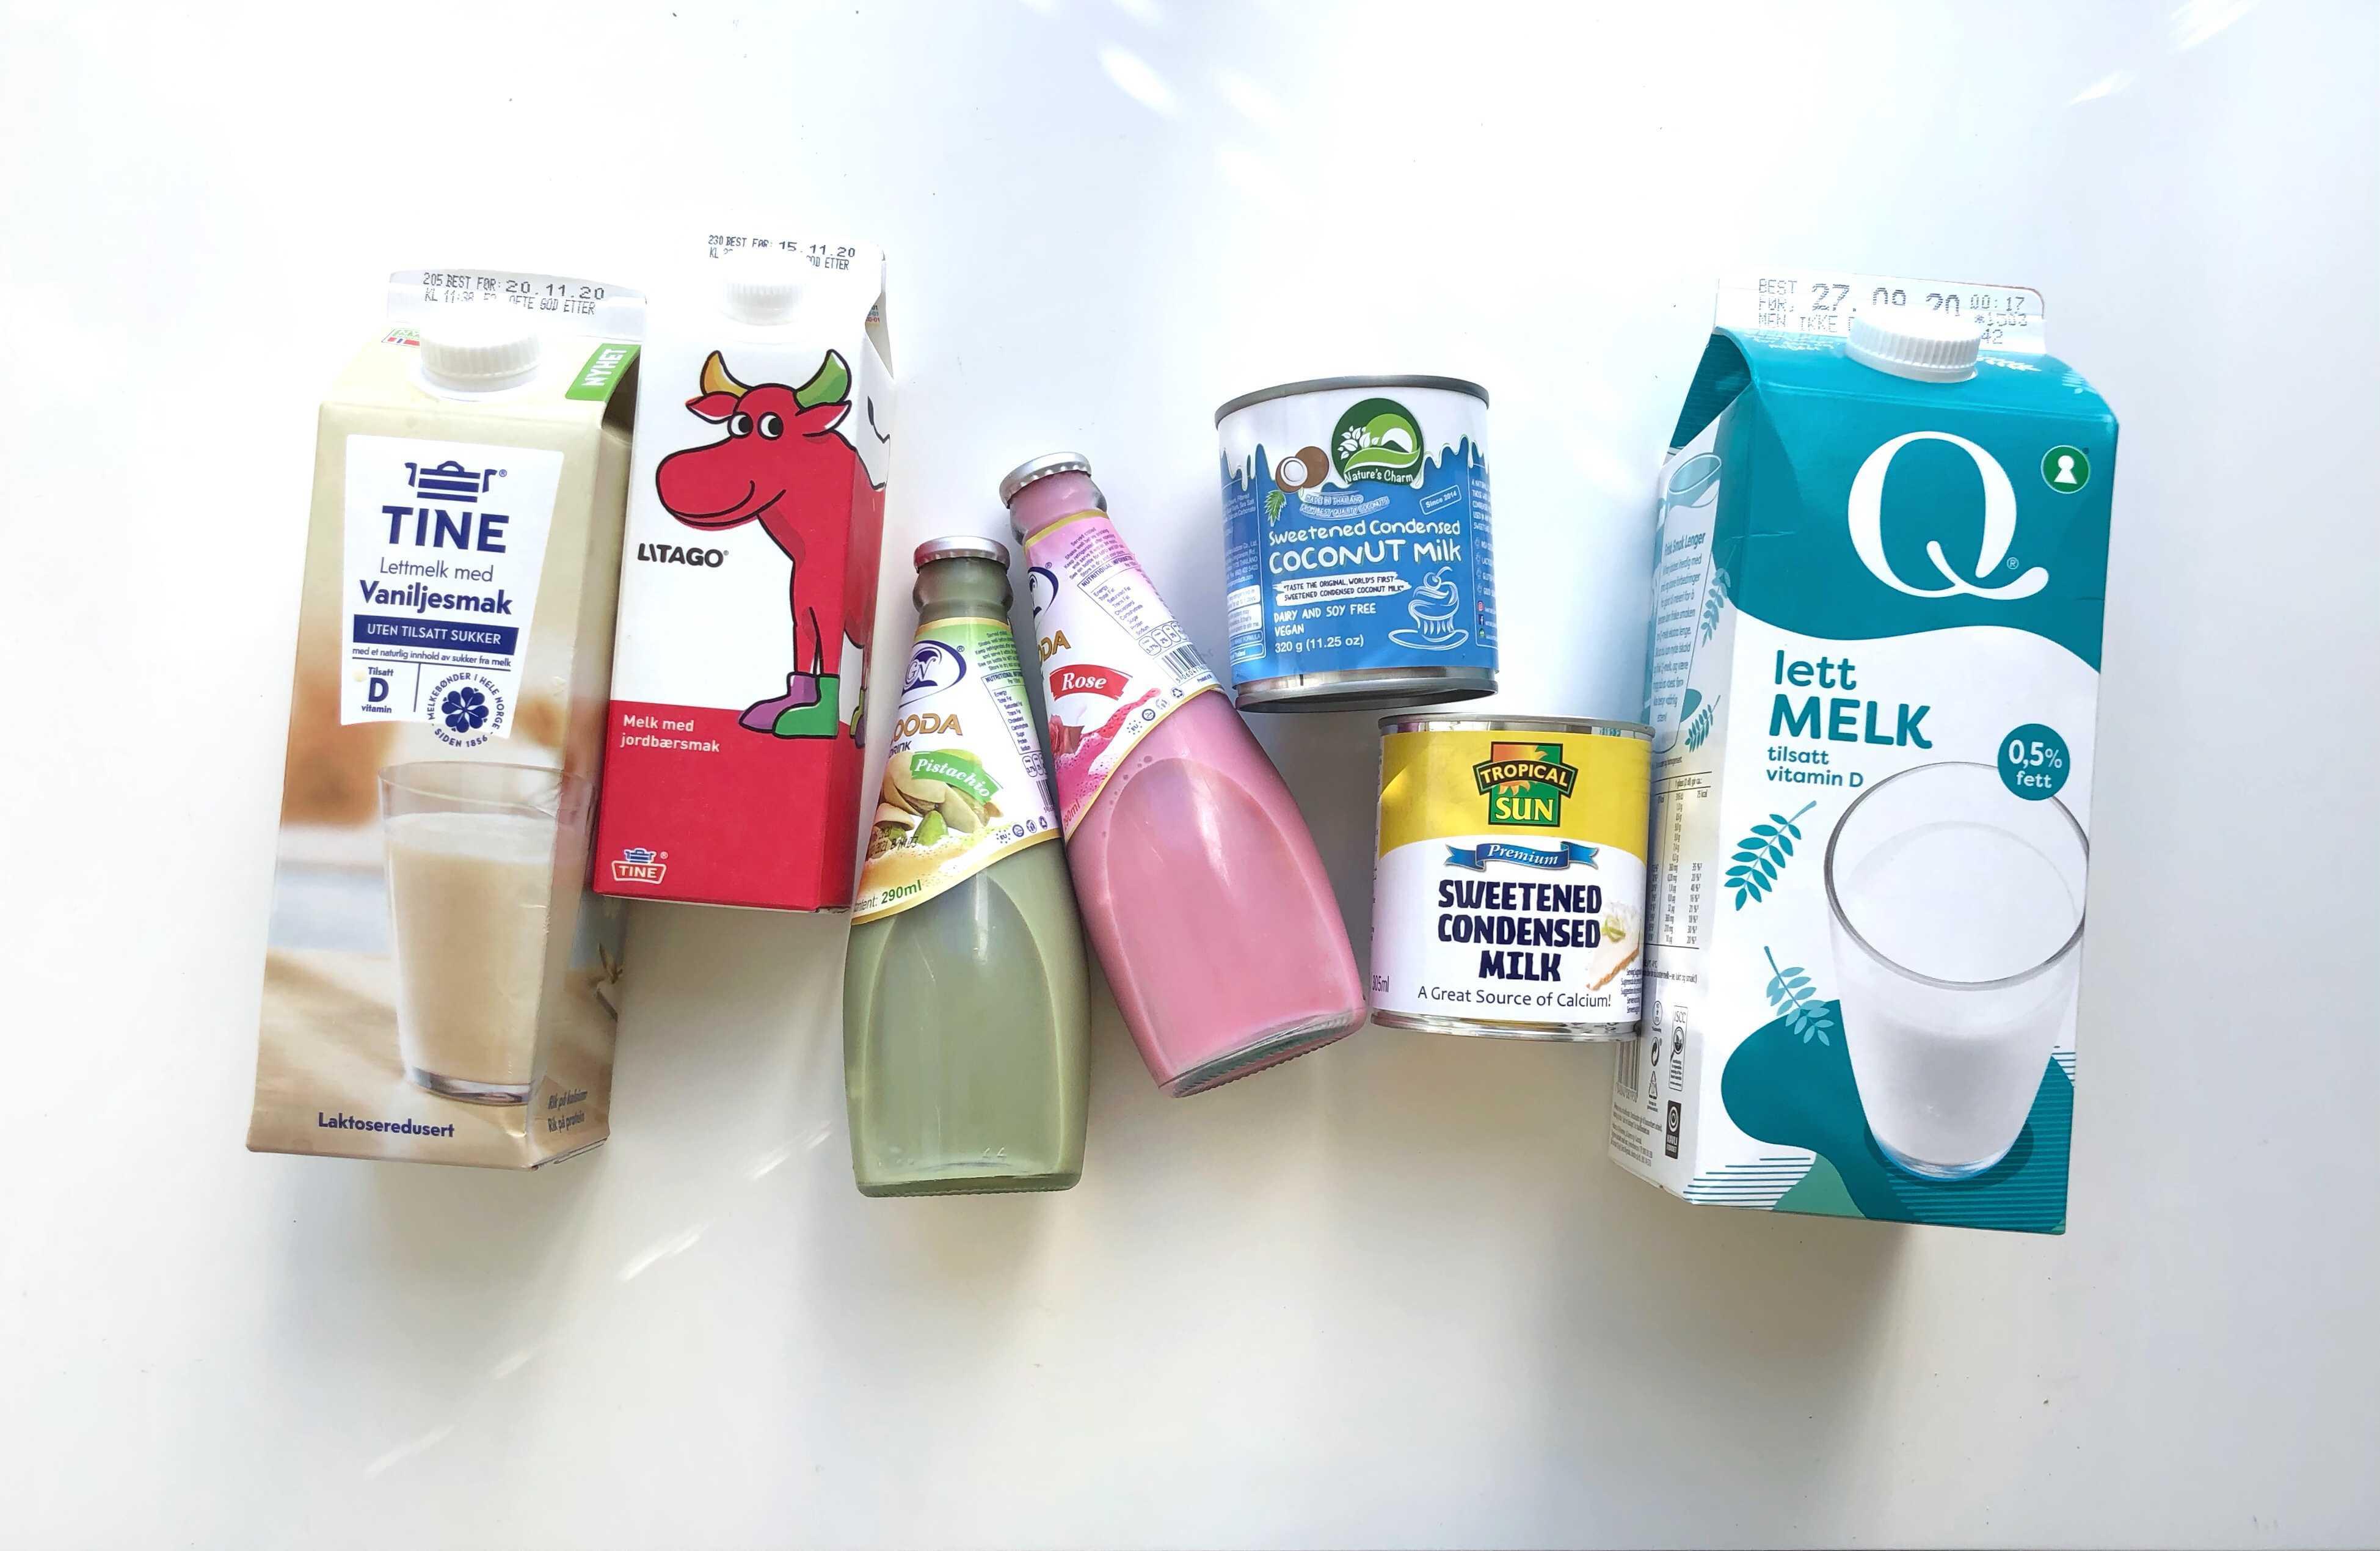 MANGFOLD: Prøv ulike typer melk og plantedrikker i boble-teen. Også pulvermelk eller creamer kan brukes. Her et utvalg av «melk» vi testet.